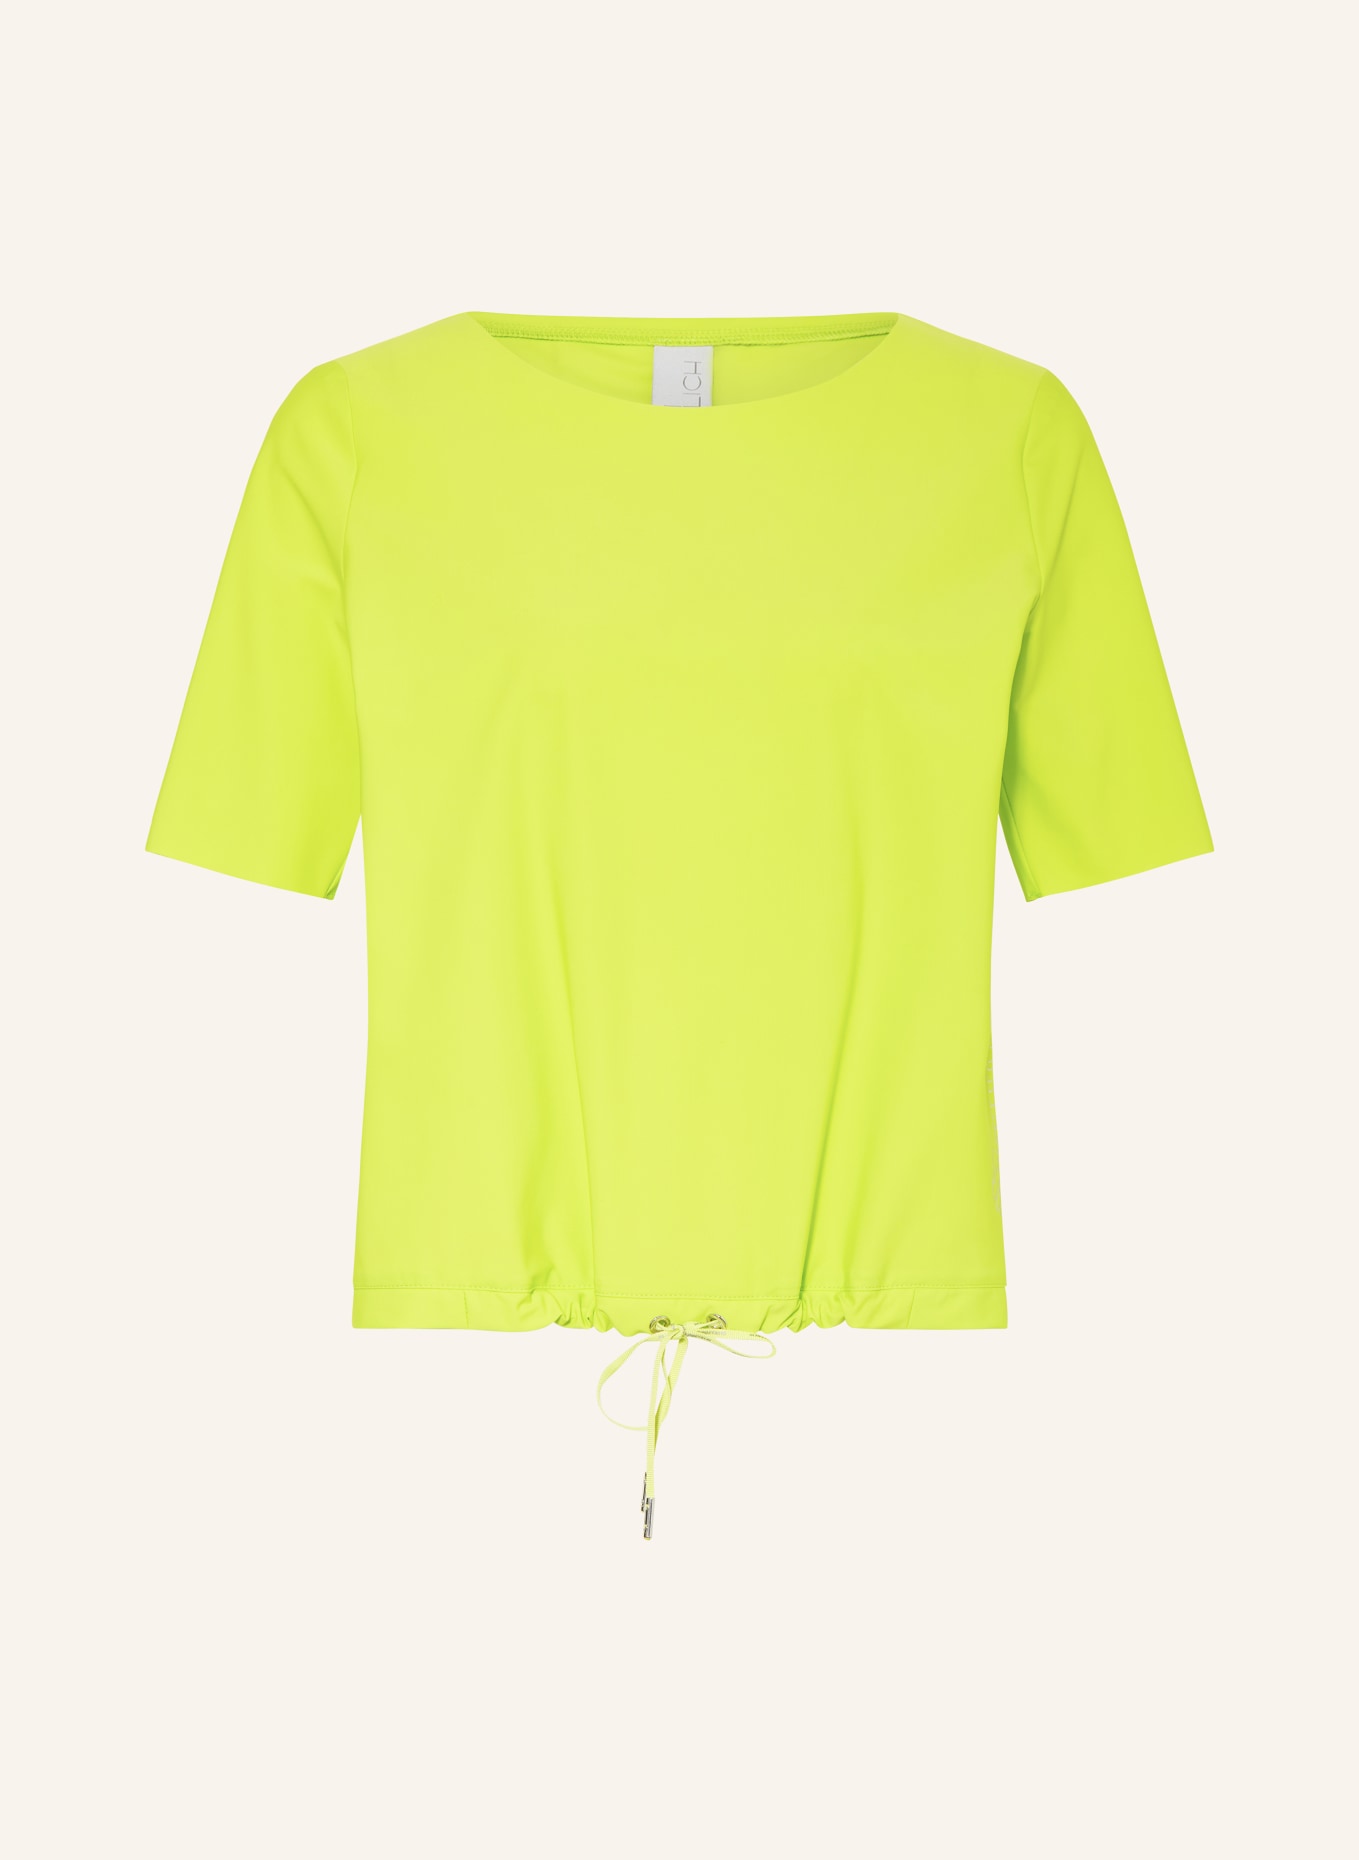 ULLI EHRLICH SPORTALM T-shirt, Color: NEON GREEN (Image 1)